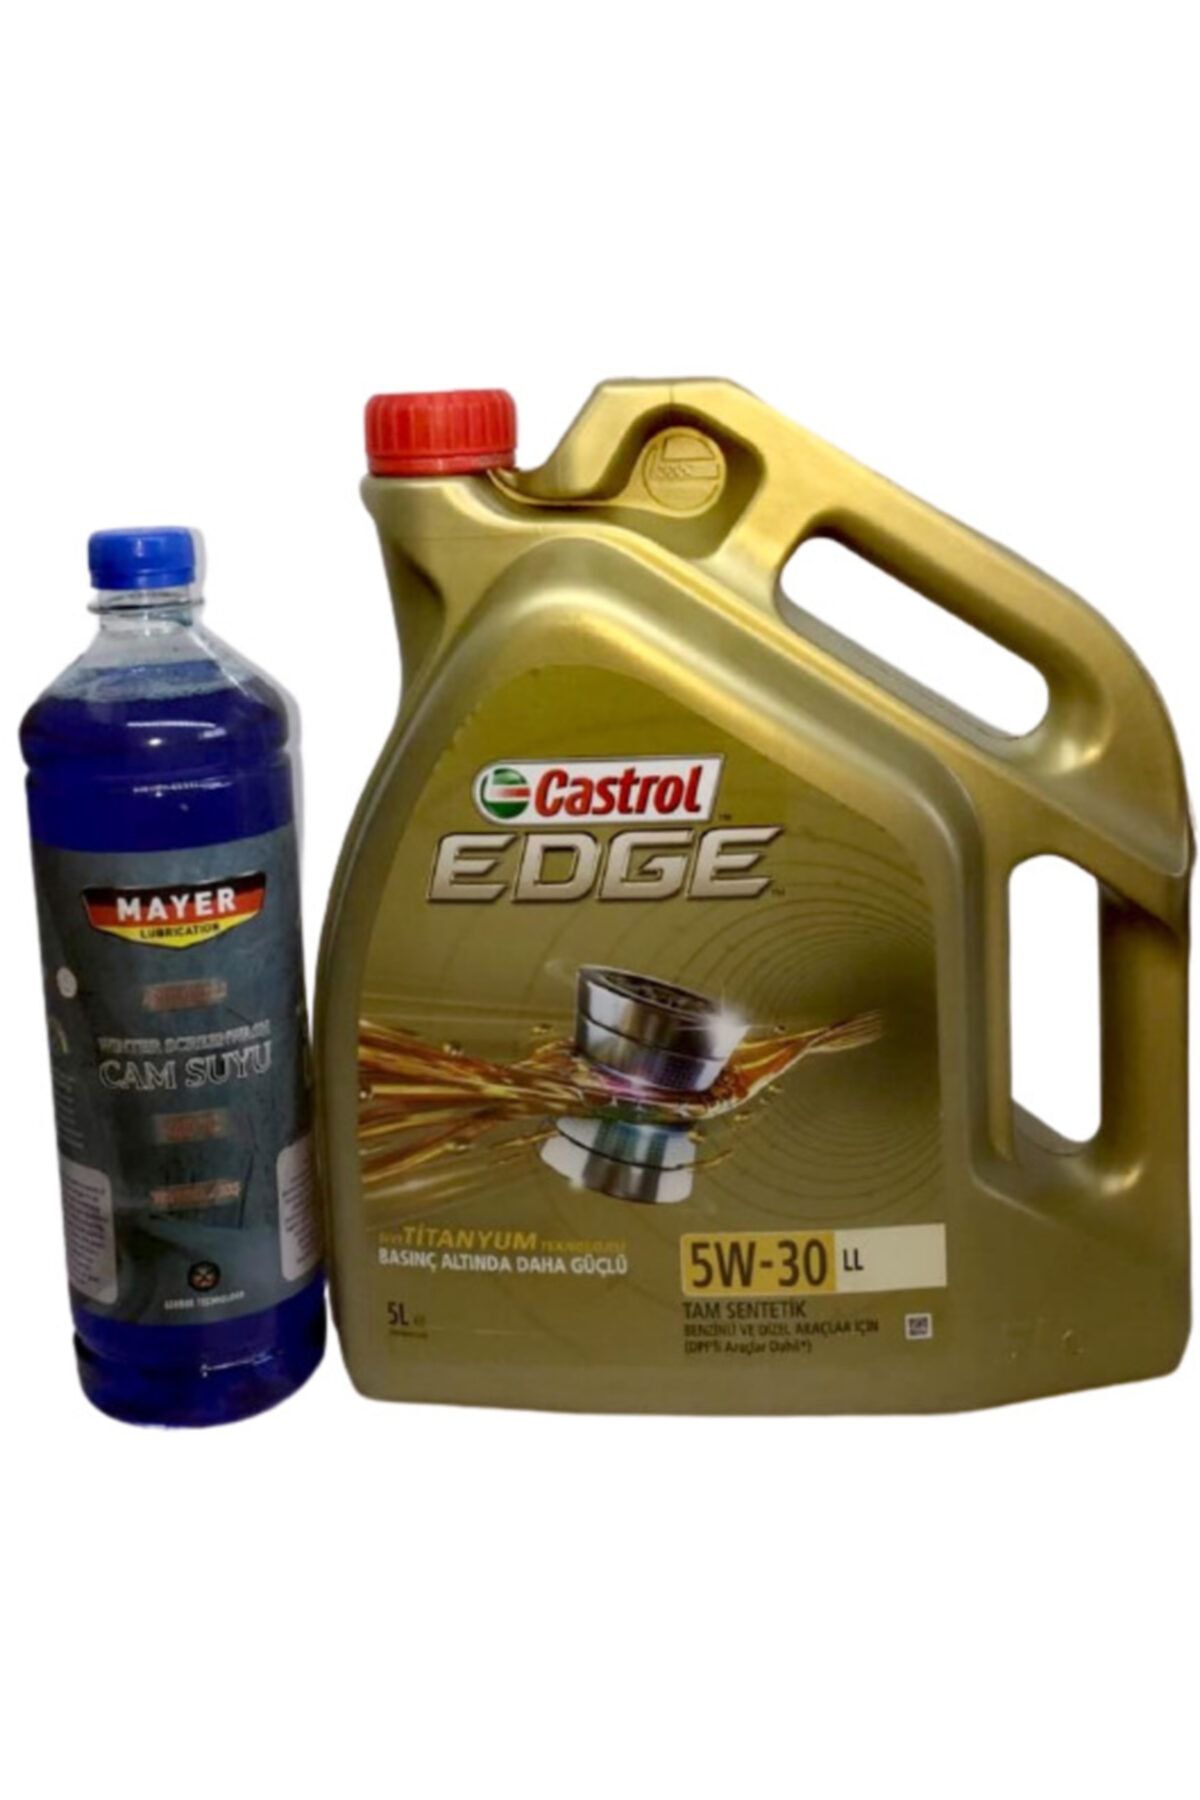 Castrol Edge 5w-30 Ll 5 L -tam Sentetik Motor Yağı (benzinli Ve Dizel Araçlar Için)+ Cam Suyu Hediye